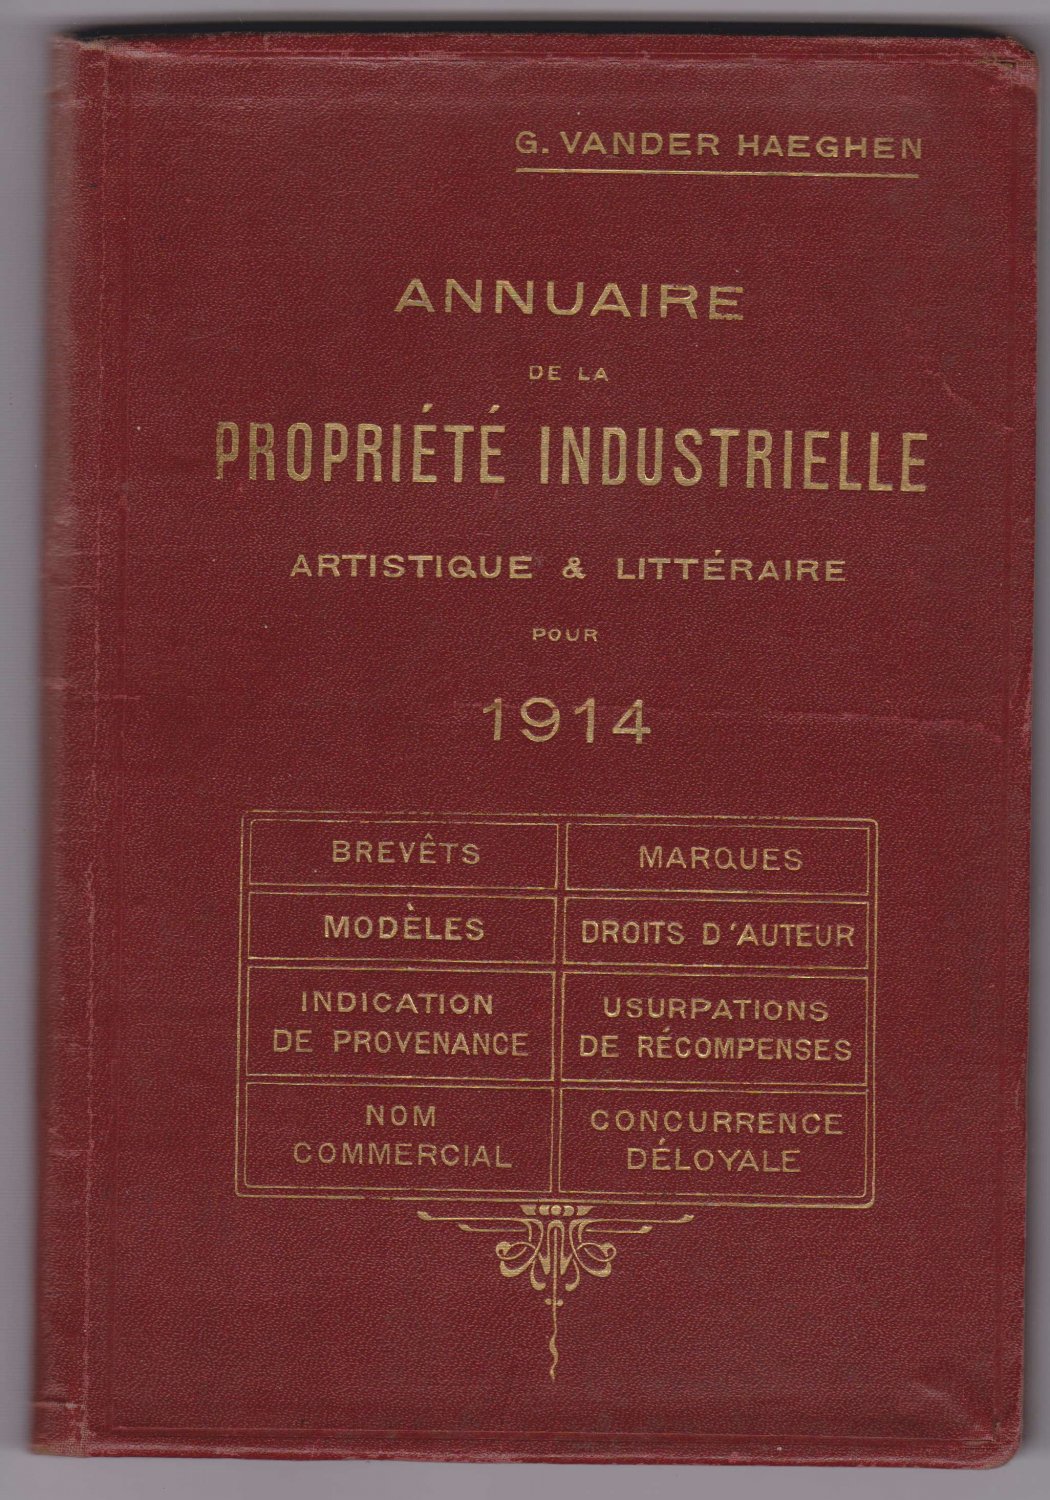 HAEGHEN, G. Vander (Herausgeber):  Annuaire de la propriété industrielle artistique et littéraire pour 1914. 